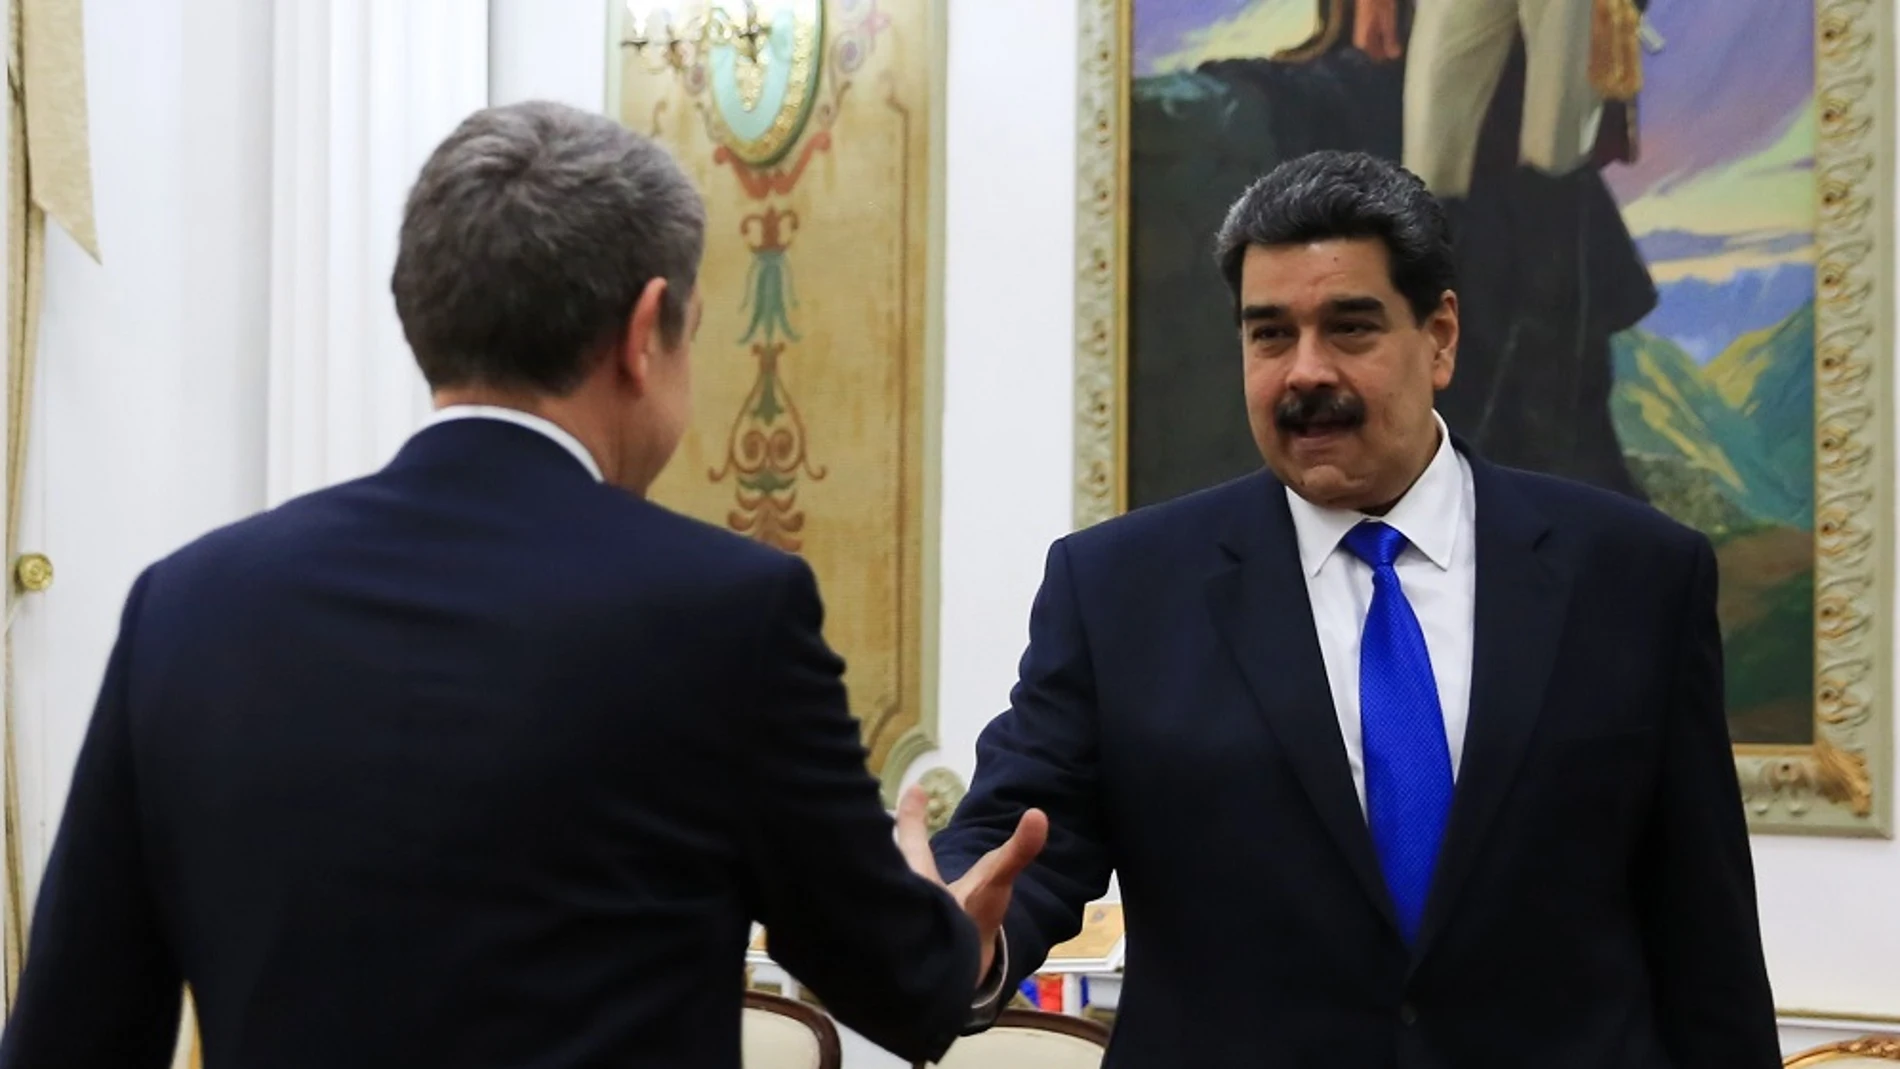 Imagen de Zapatero y Maduro en Venezuela